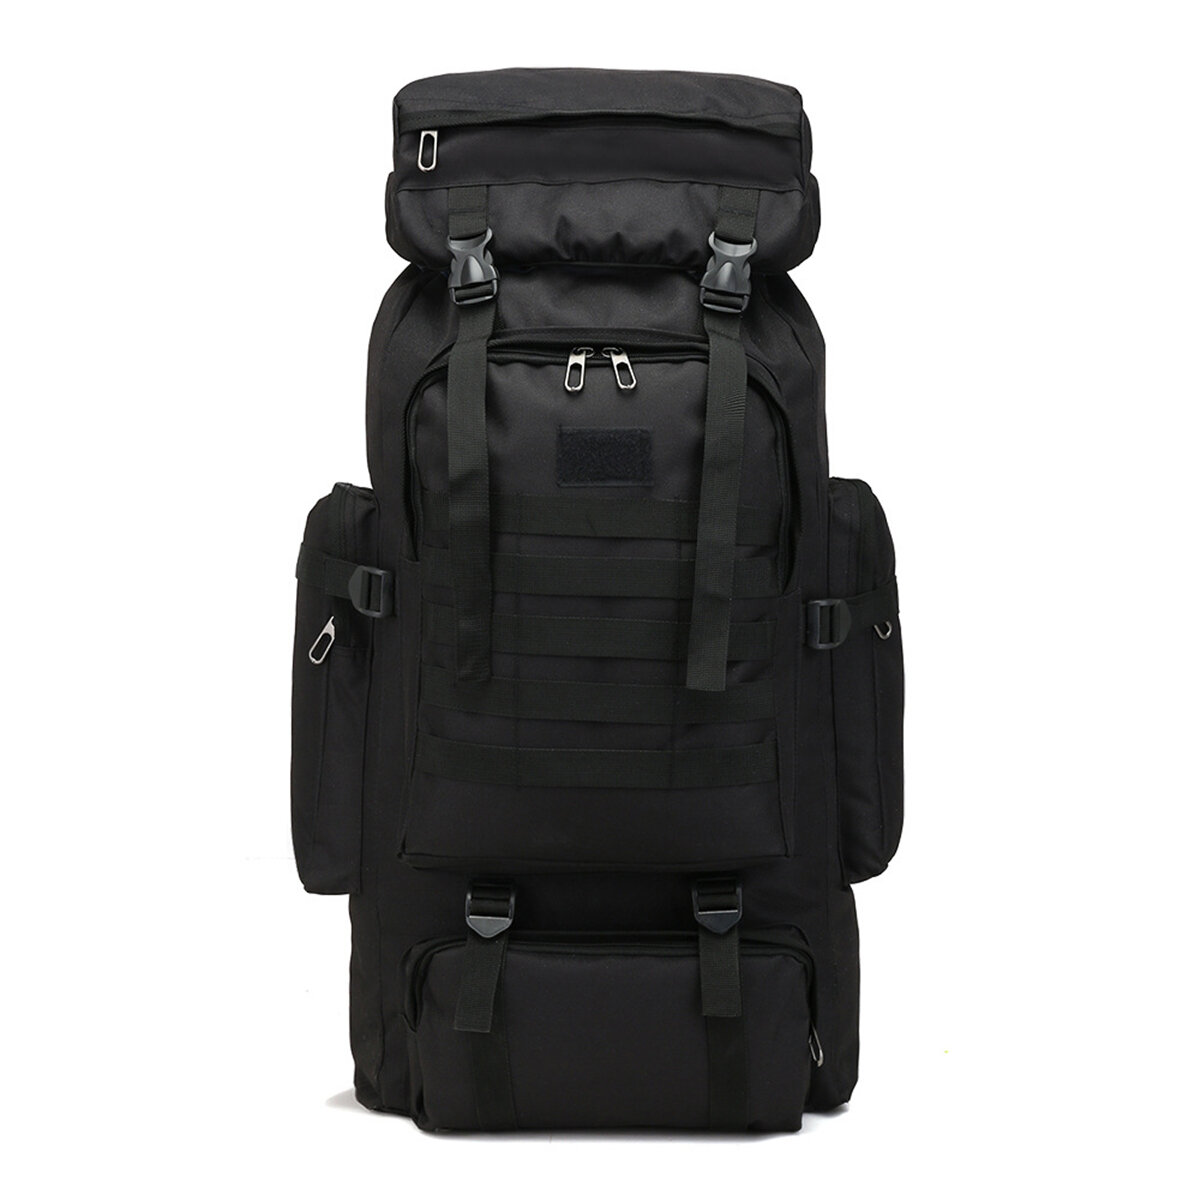 Plecak 80L Molle Tactical Bag z EU za $20.14 / ~76zł